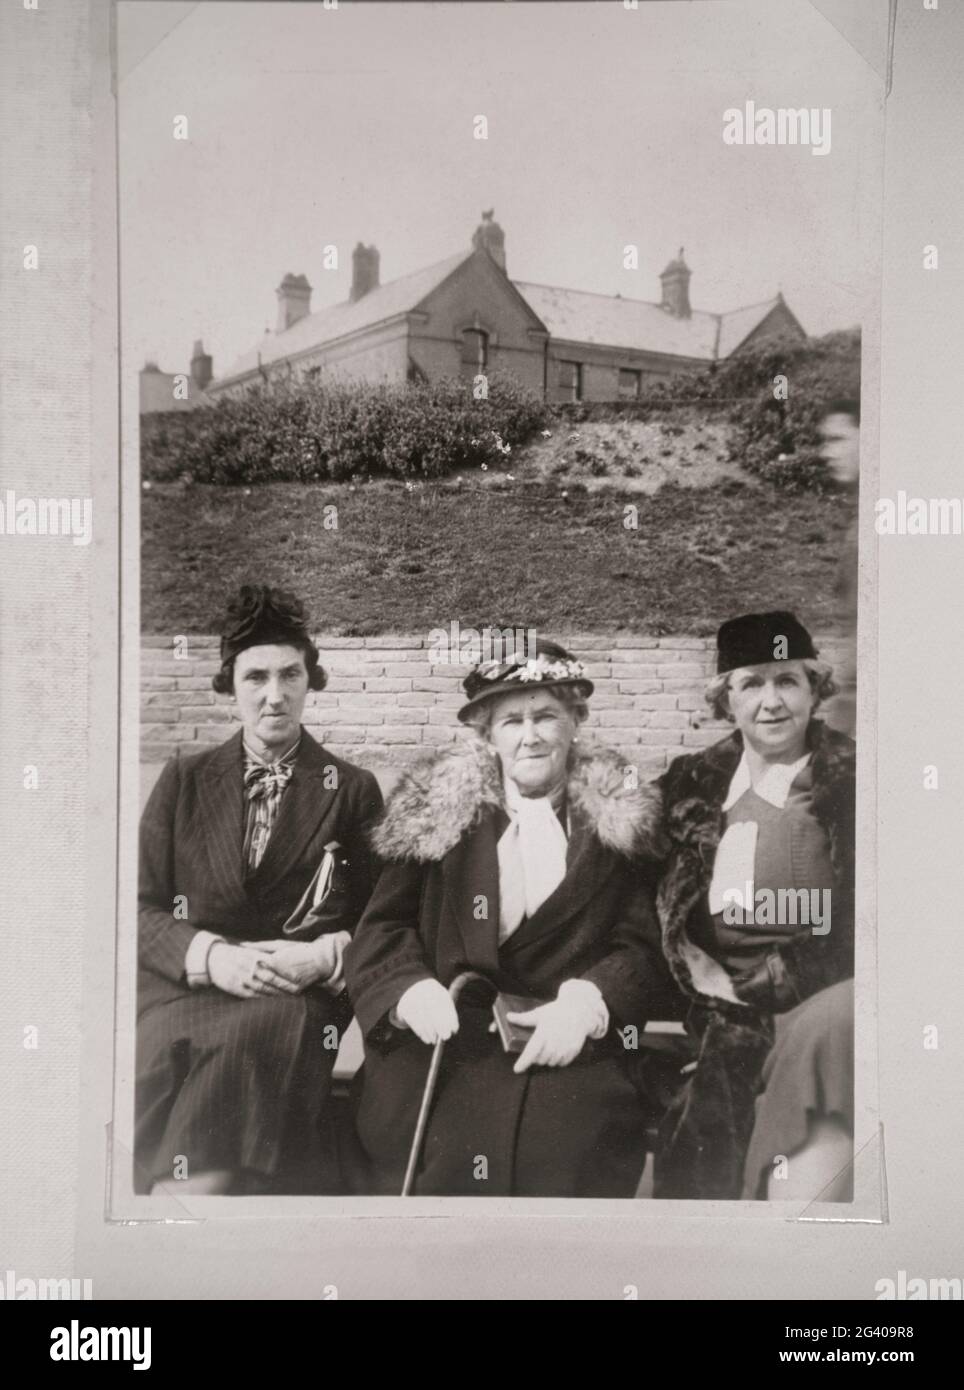 Auténtica fotografía vintage de dos mujeres jóvenes y una mujer mayor con sombreros sentados juntos. Concepto de nostalgia, el pasado, Foto de stock